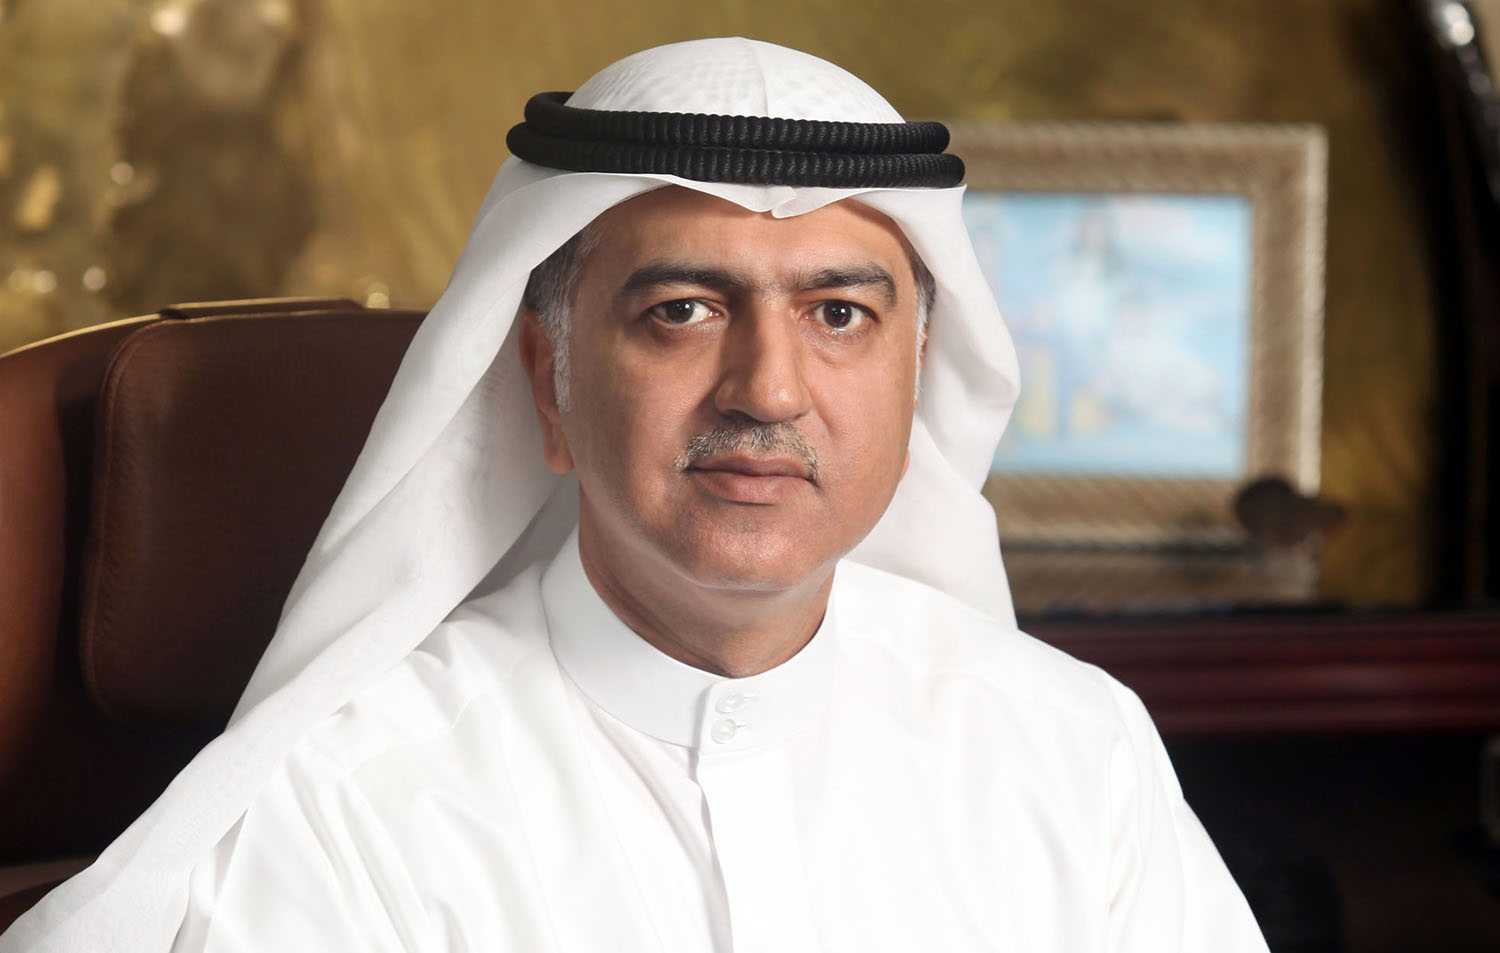 Kuwait Oil Company (KOC) Chief Executive Officer Hashem Hashem